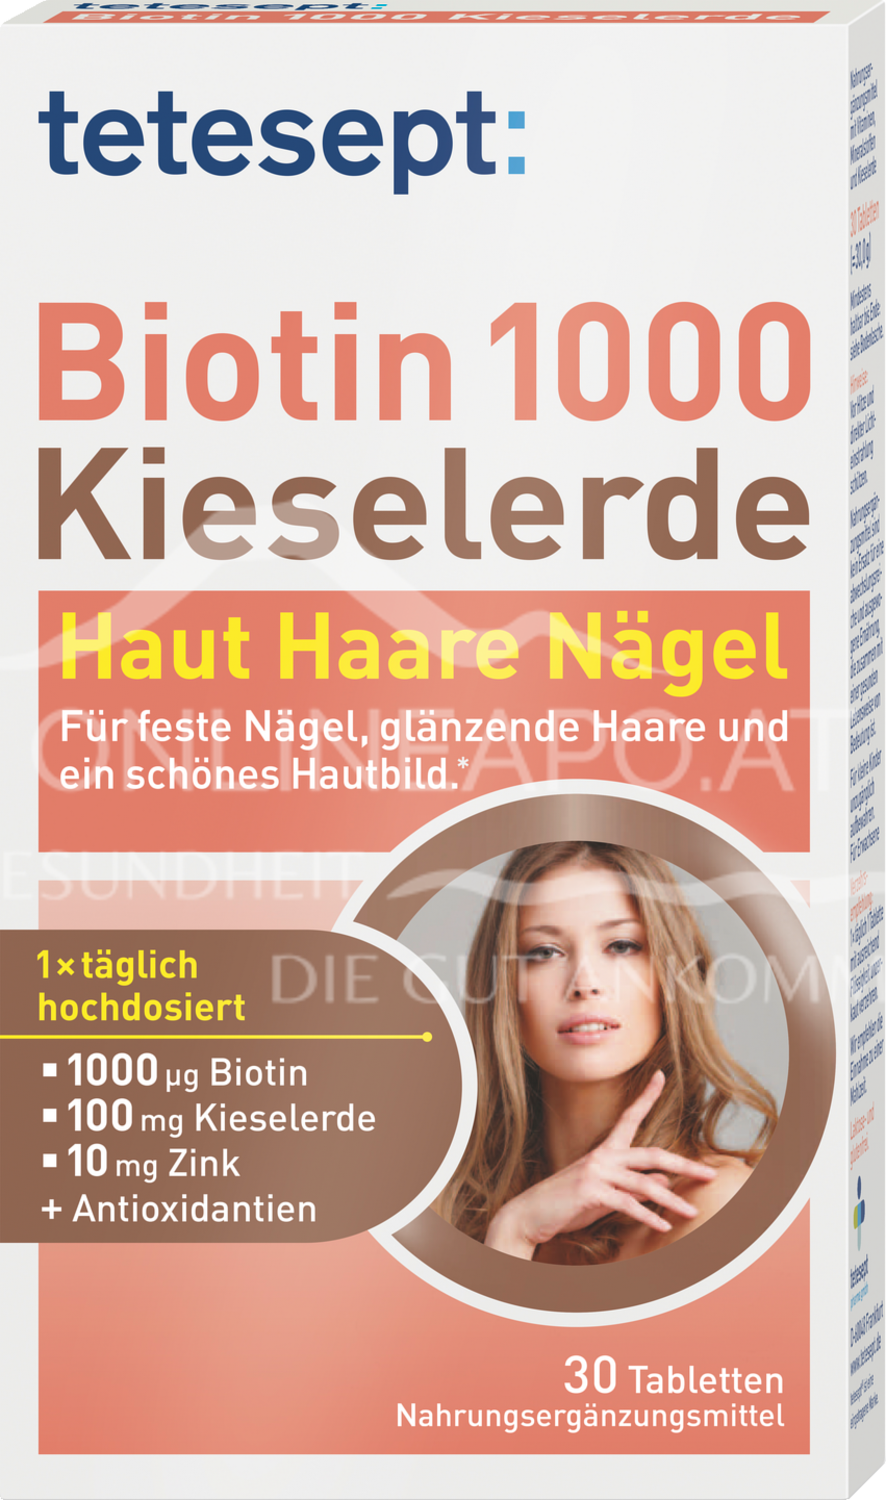 tetesept Biotin 1000 + Kieselerde Tabletten